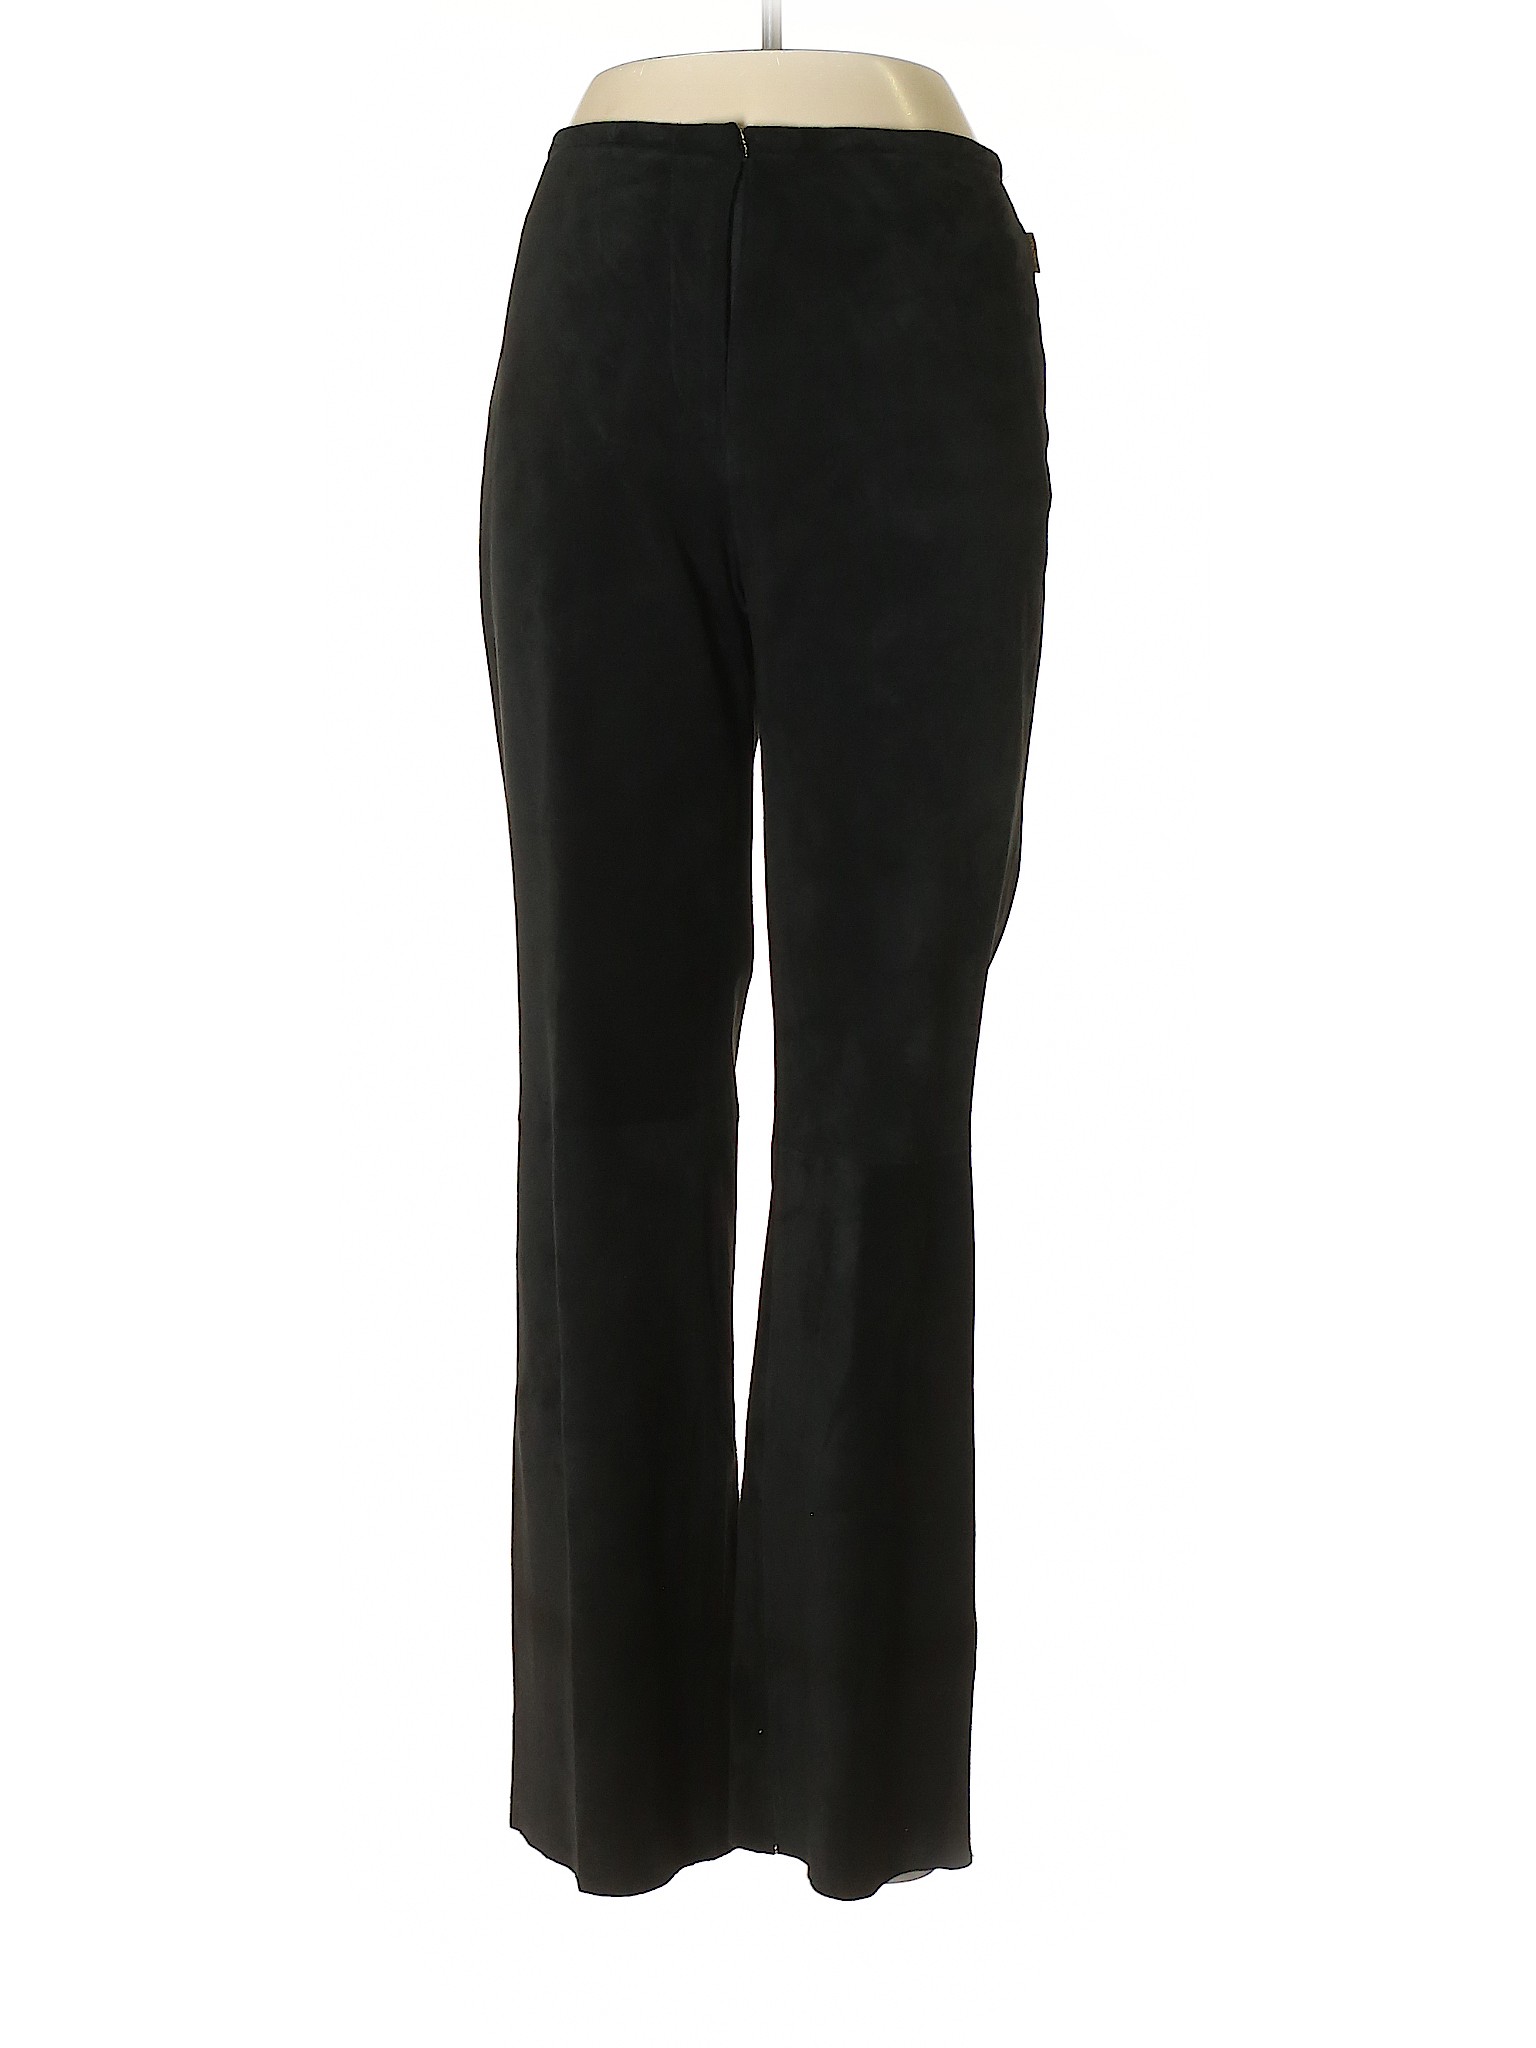 Skotts Suede Women Black Leather Pants 8 | eBay